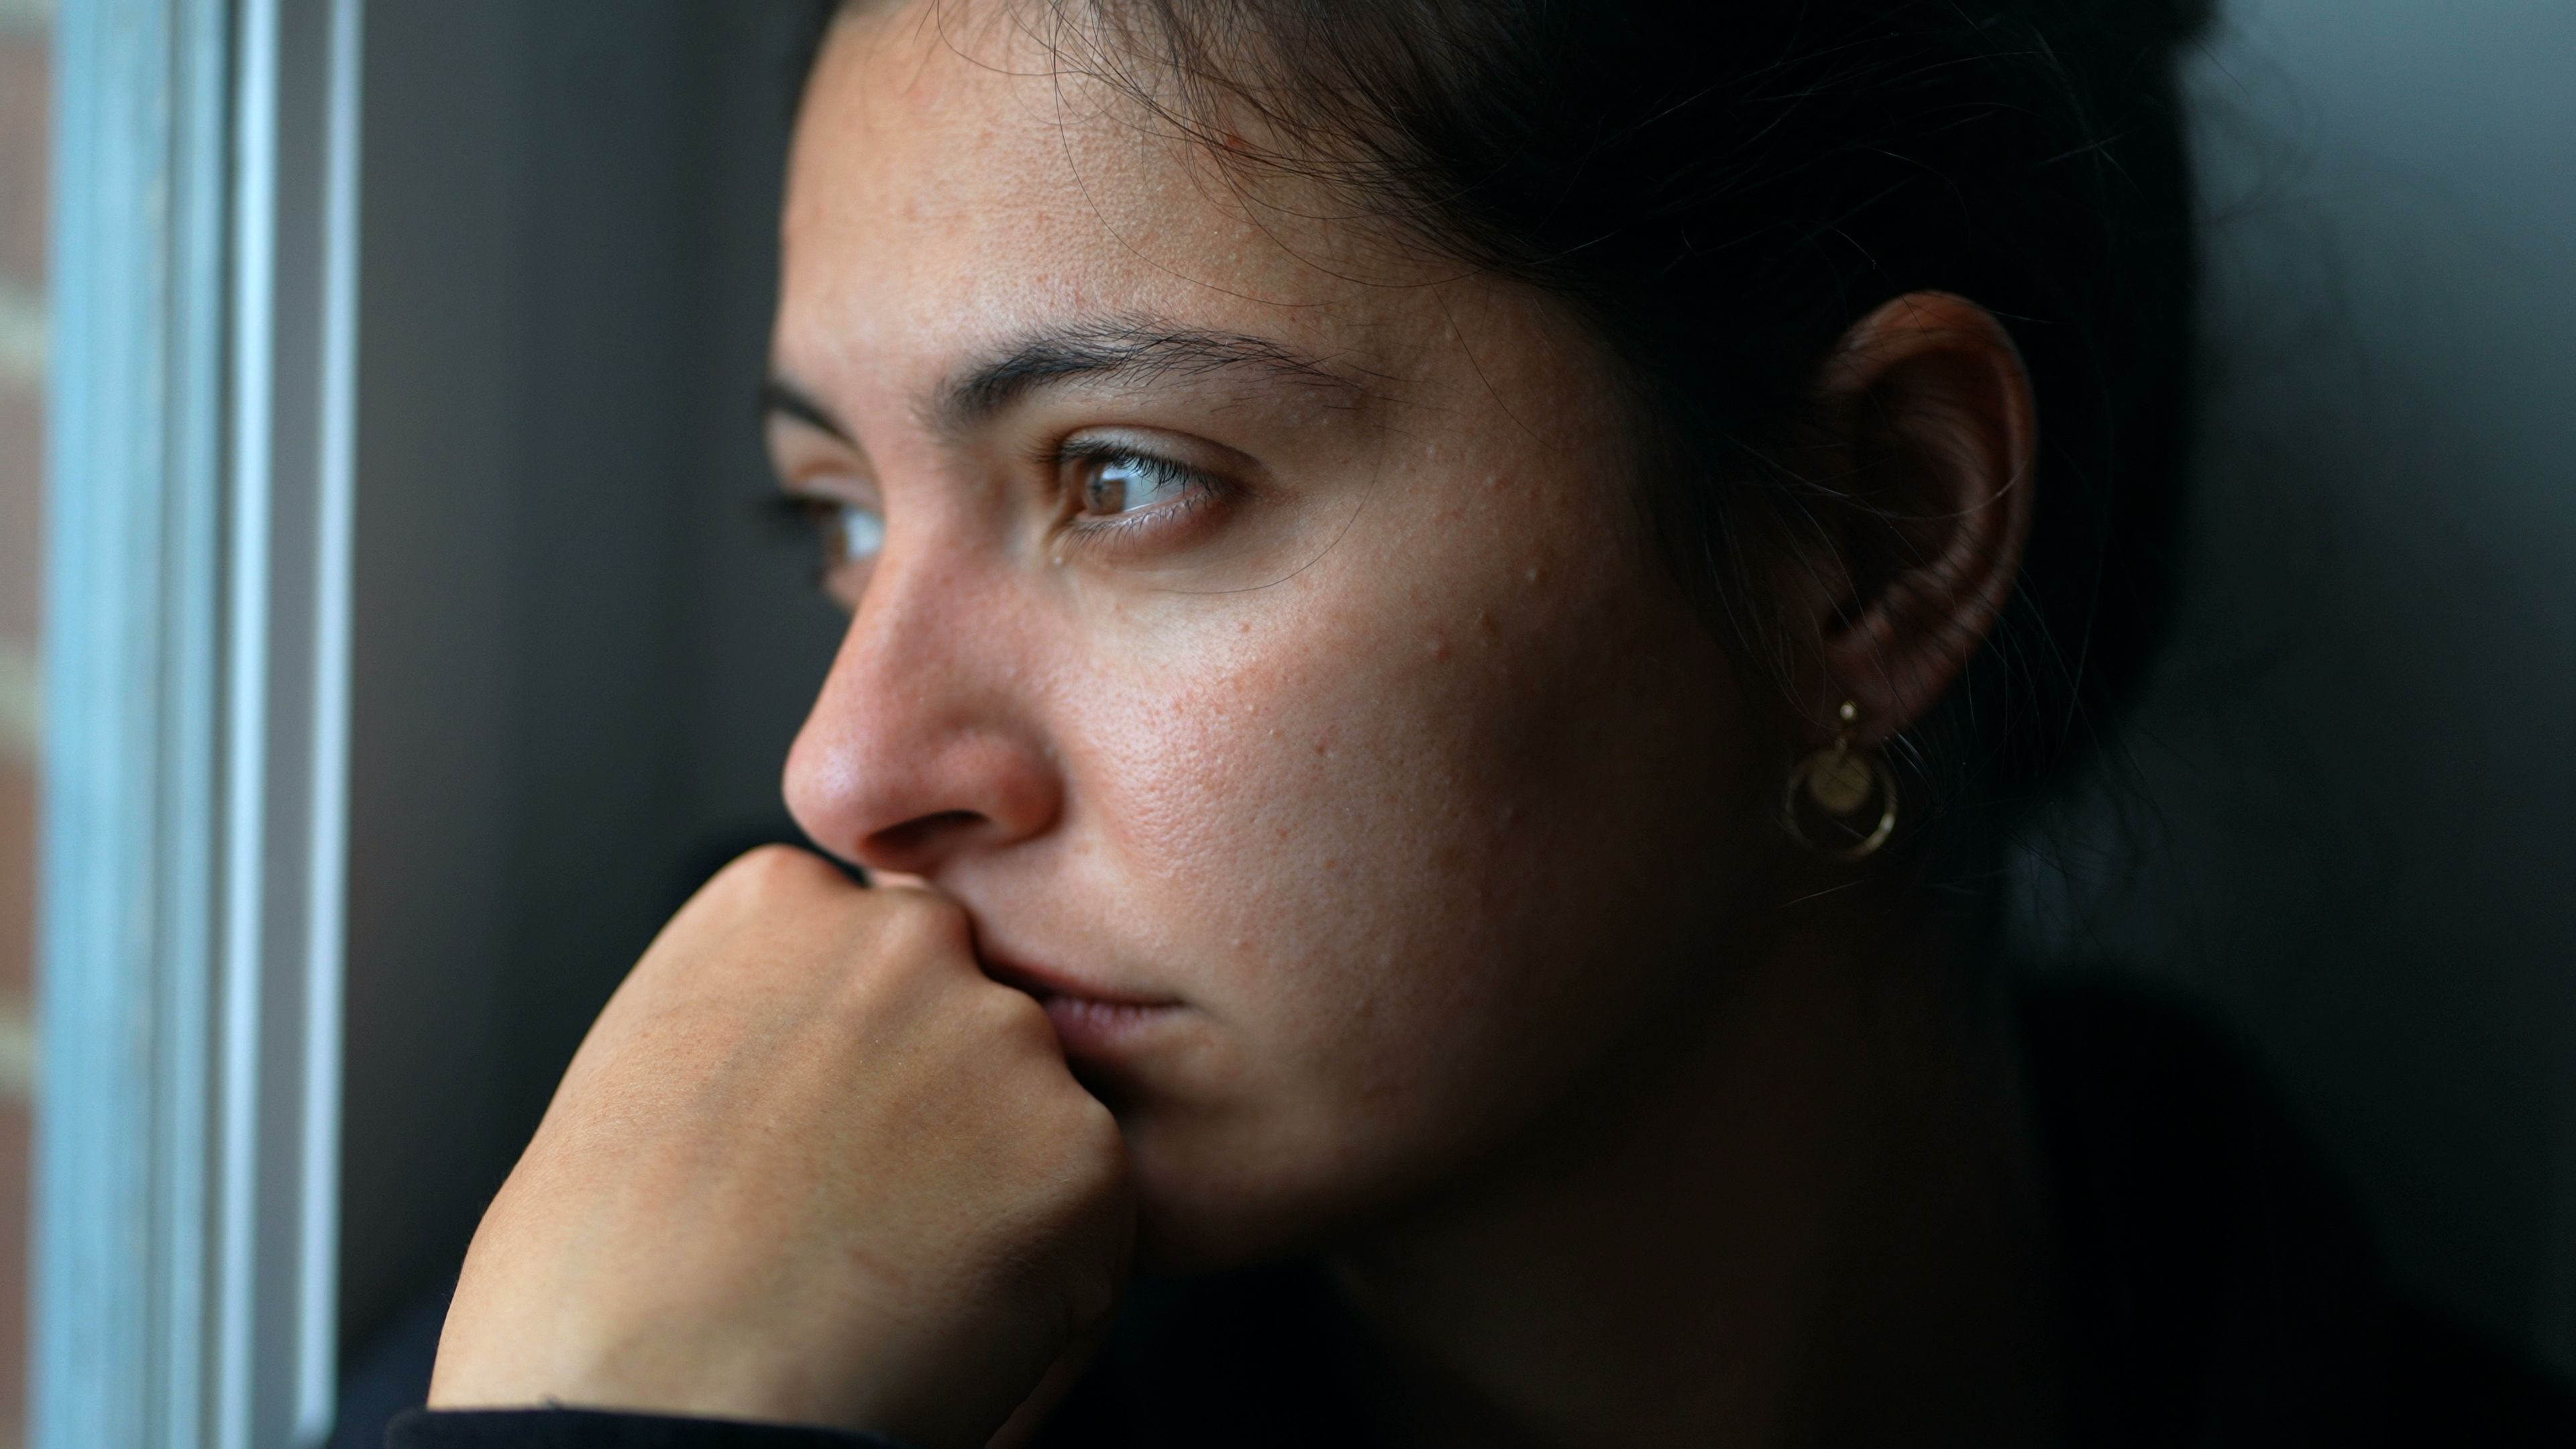 Eine junge Frau, die gedankenverloren durch das Fenster schaut | Quelle: Shutterstock